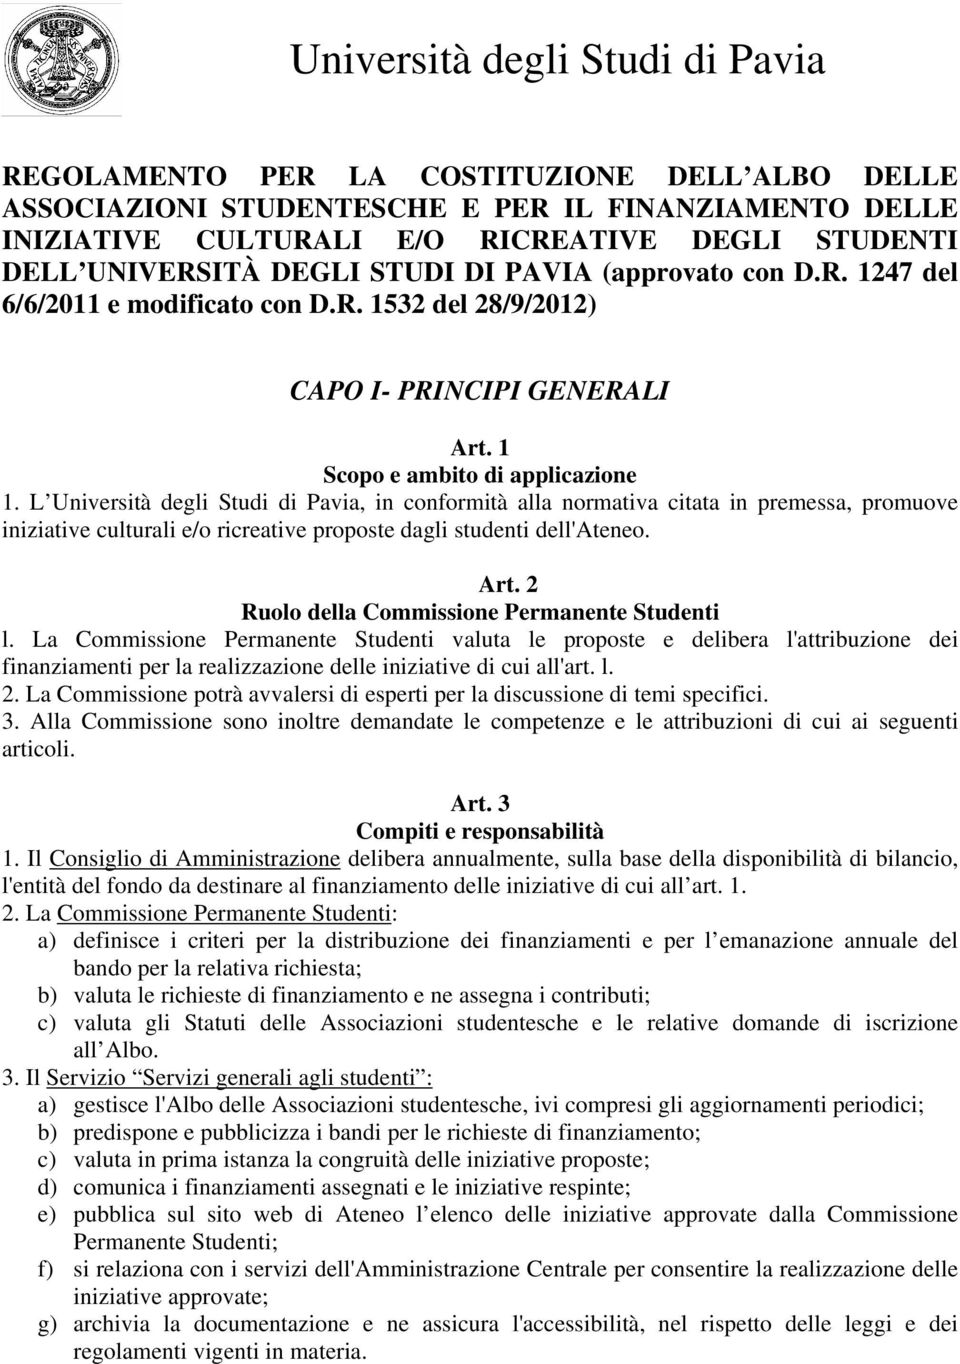 L Università degli Studi di Pavia, in conformità alla normativa citata in premessa, promuove iniziative culturali e/o ricreative proposte dagli studenti dell'ateneo. Art.